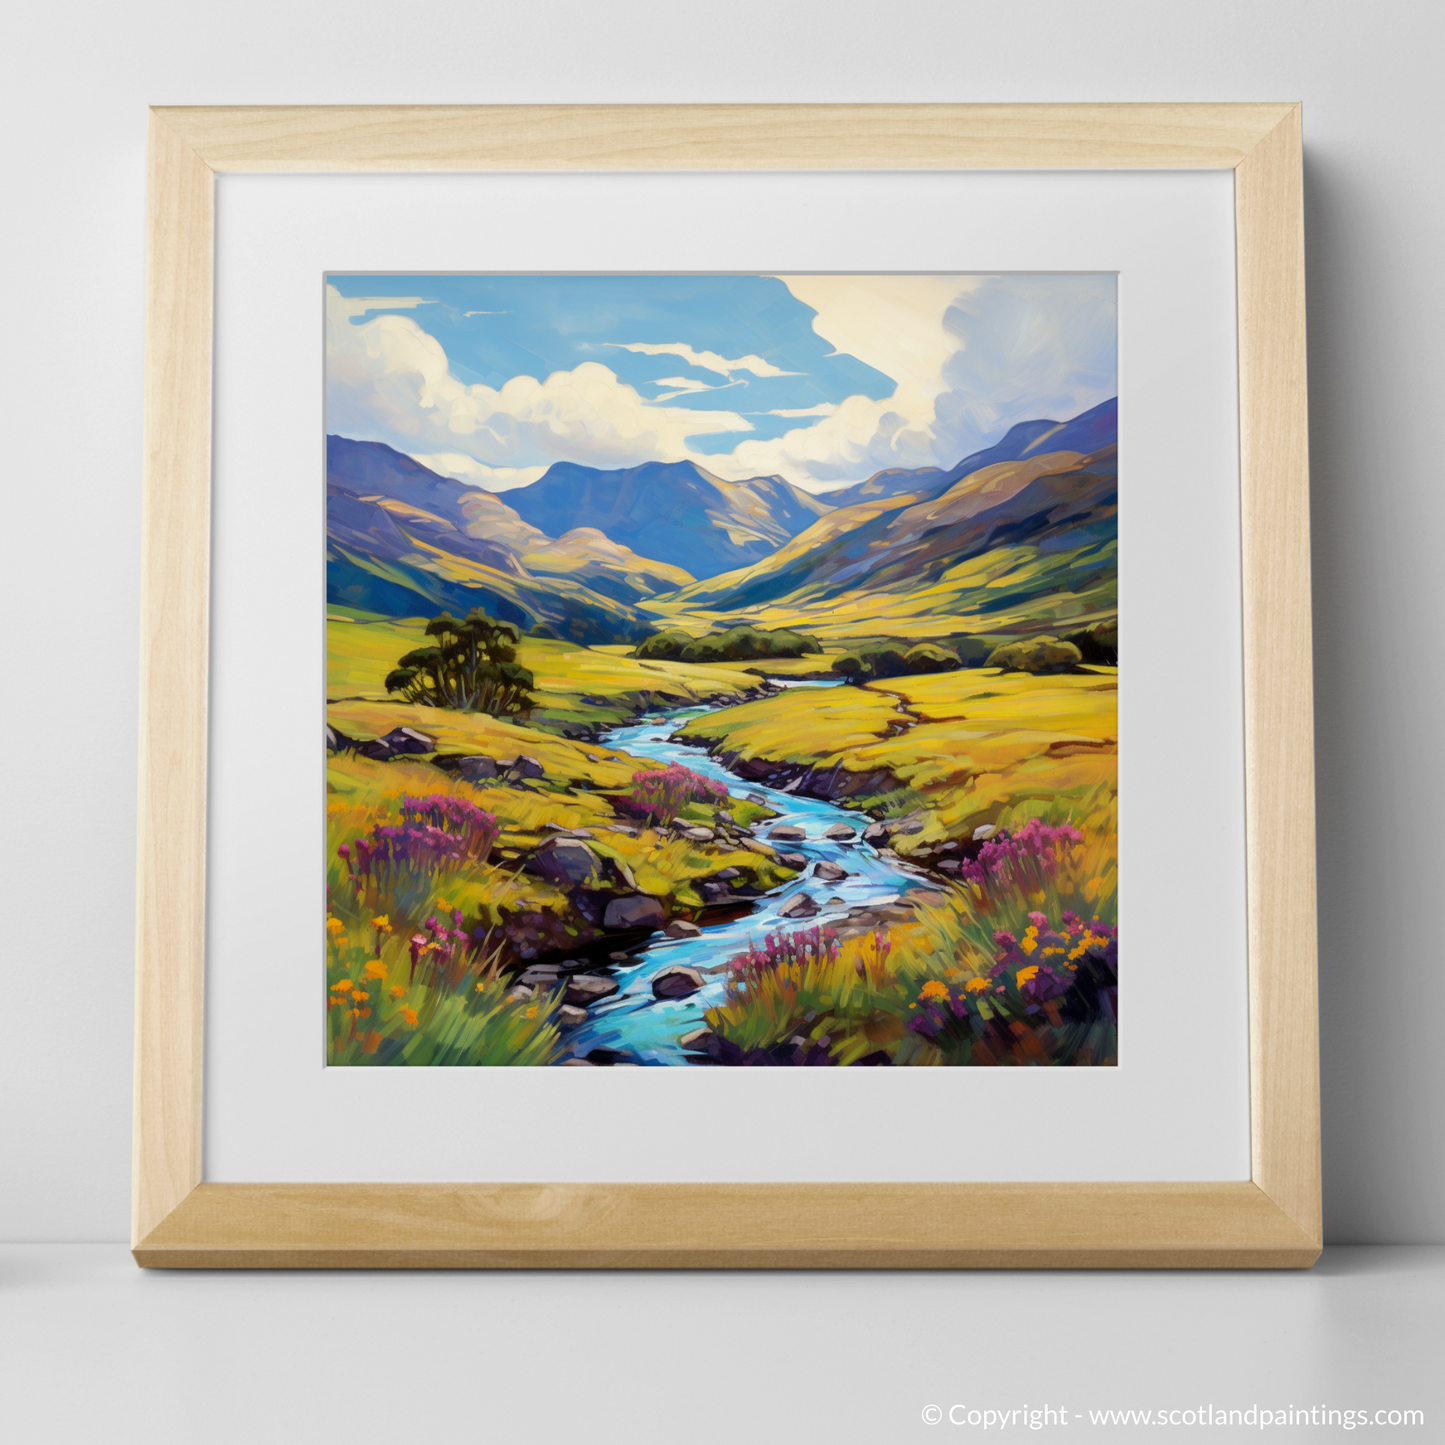 Art Print of Glen Shiel, Highlands in summer with a natural frame